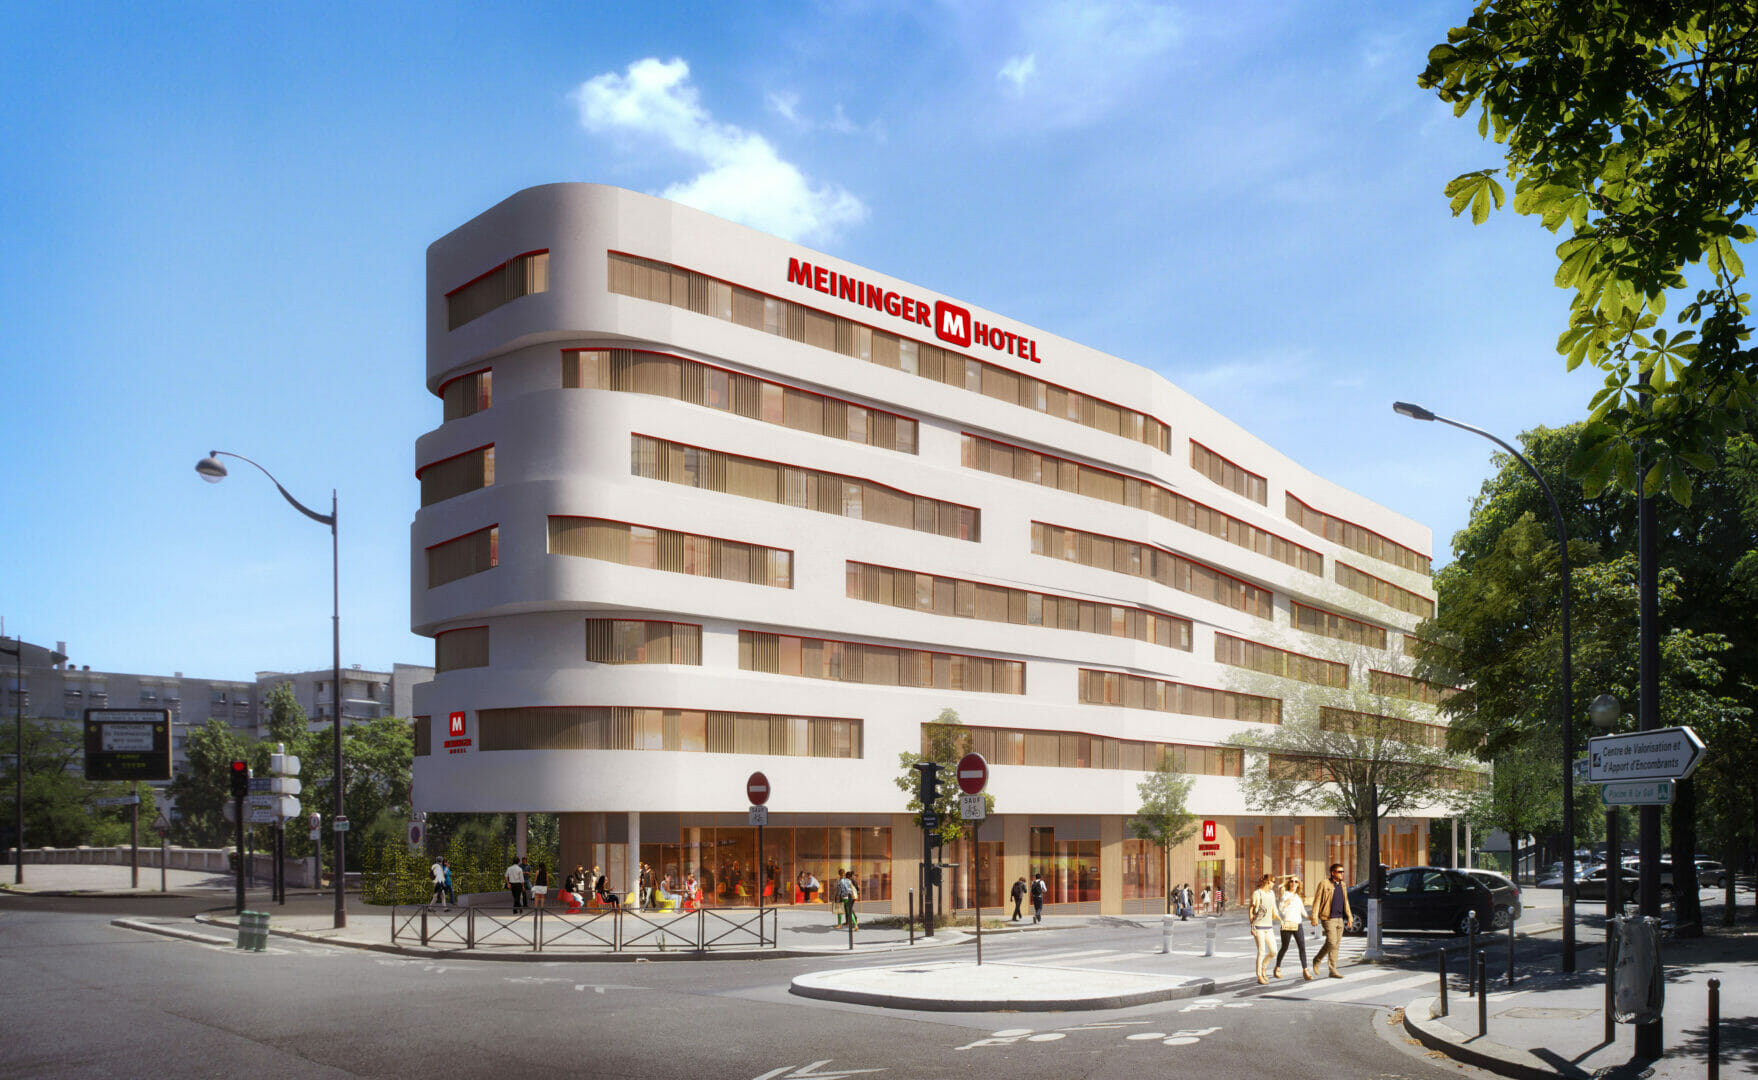 MEININGER Hotels enters French market with Porte de Vincennes Paris opening